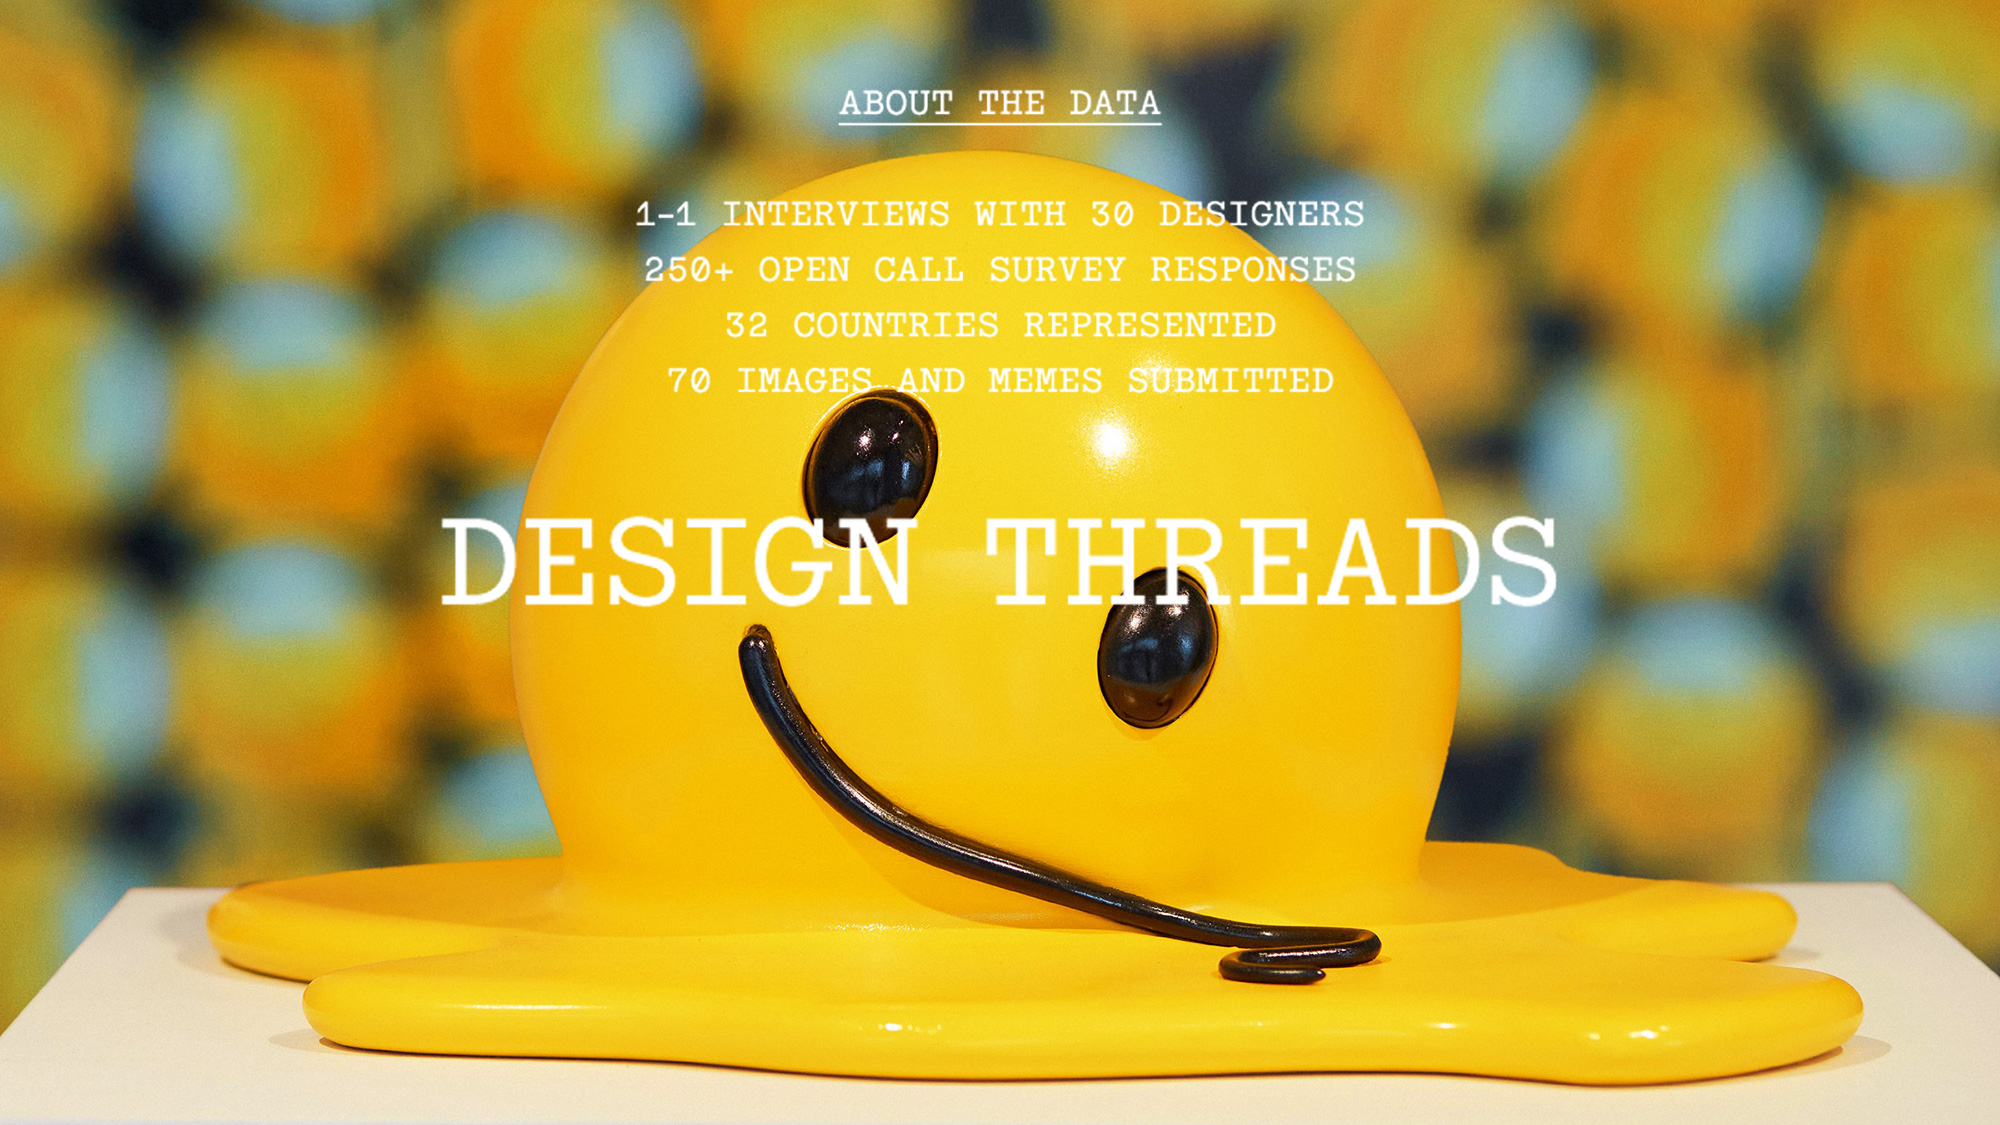 “Design Threads” Report